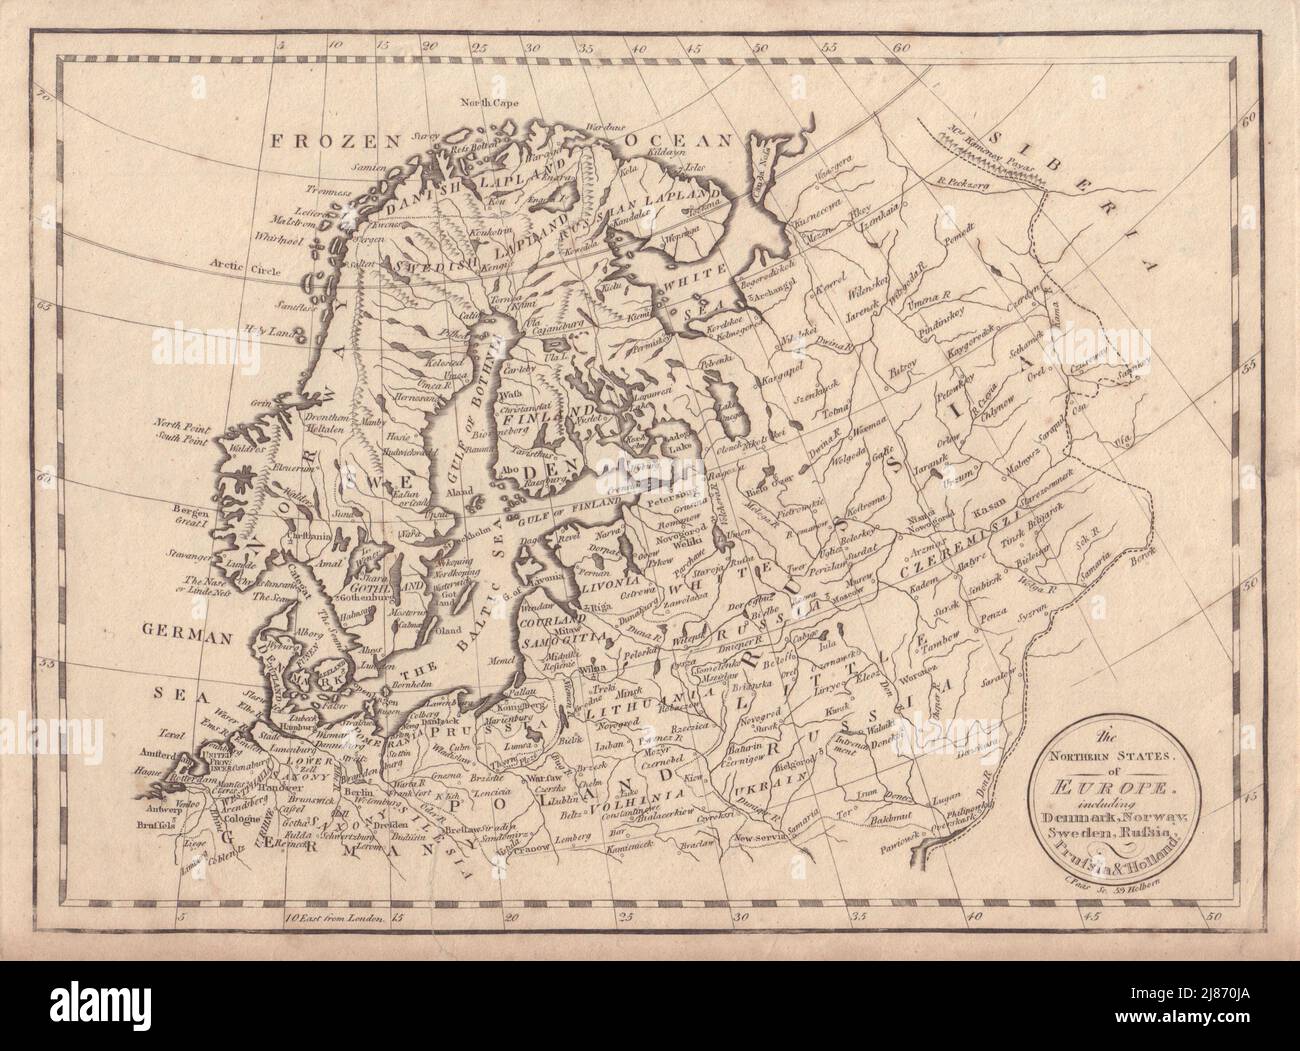 Estados del Norte de Europa… Dinamarca Noruega Suecia Rusia Prusia. Mapa PAAS 1800 Foto de stock